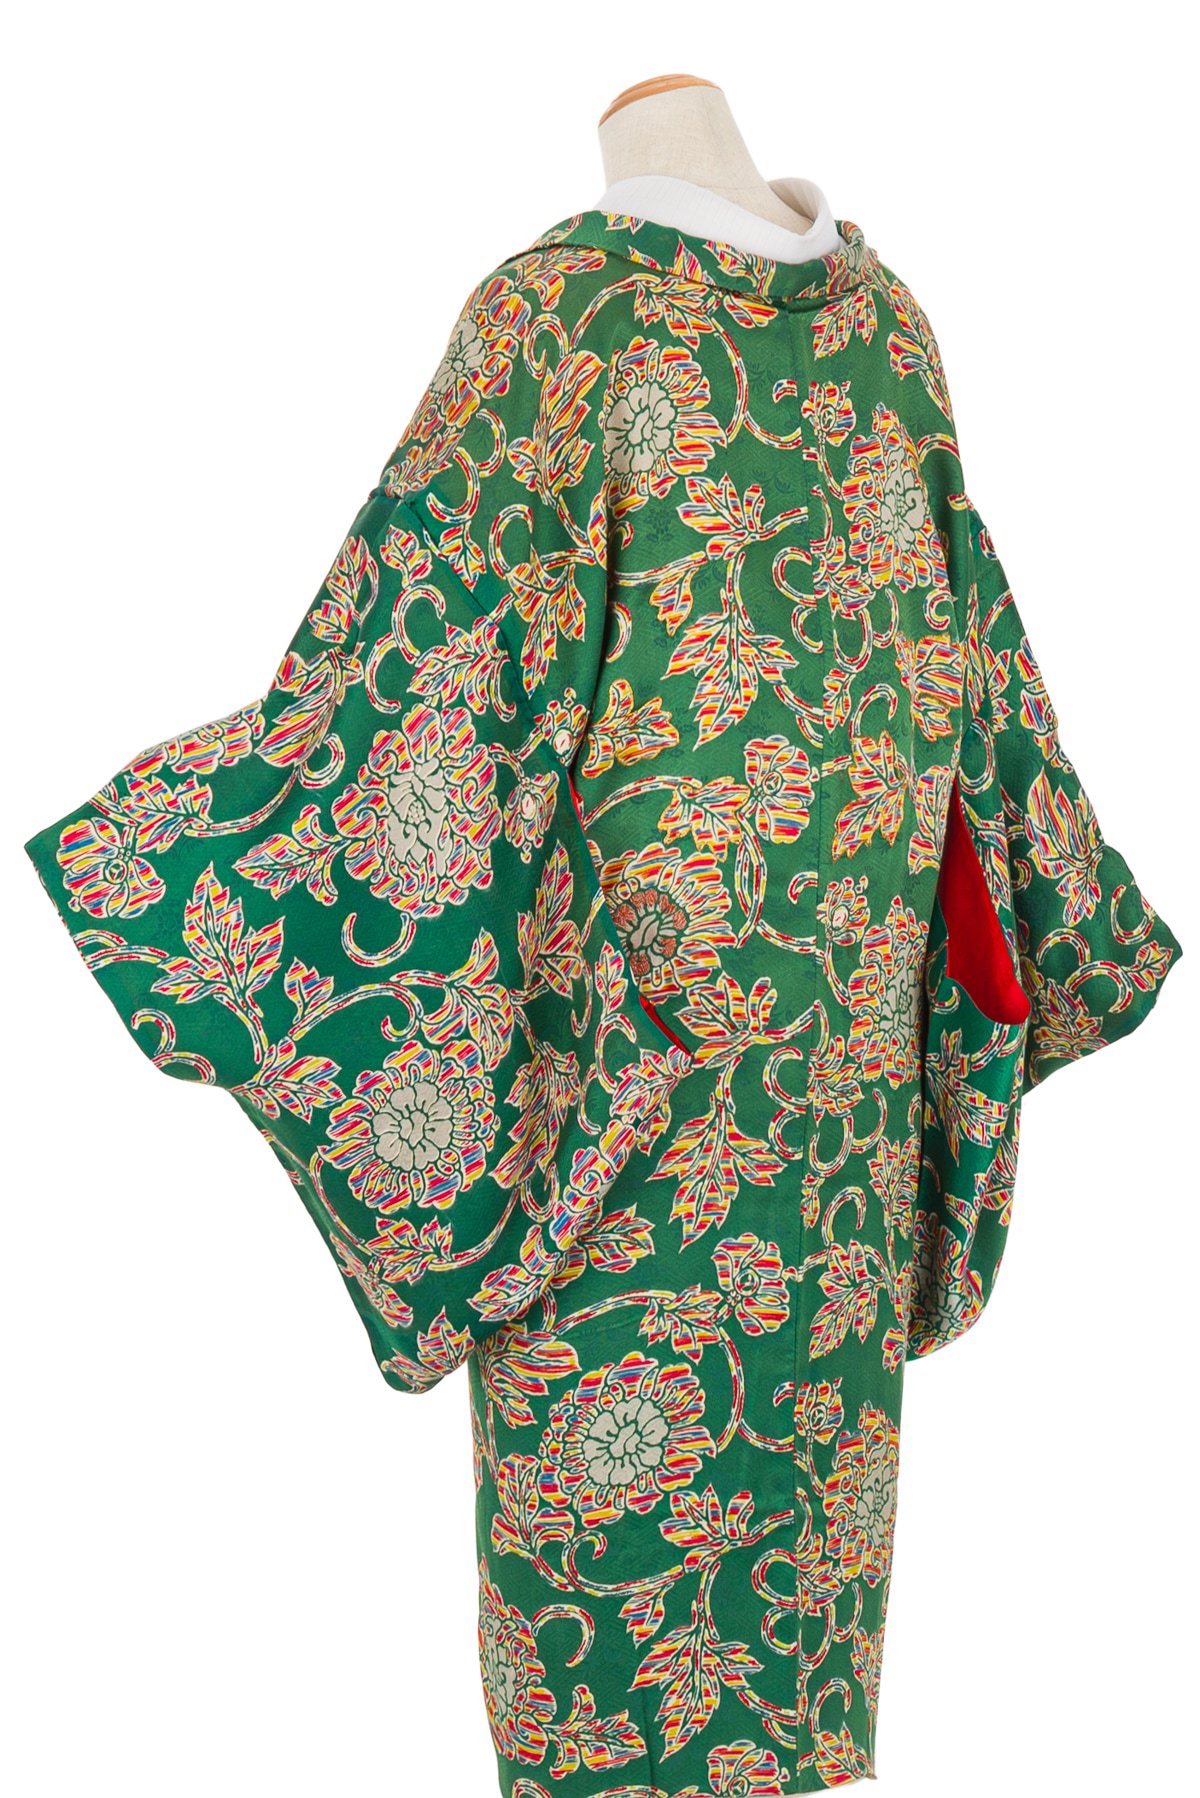 アンティーク着物 長羽織 虹色唐花 からん::アンティーク着物・リサイクル着物の通販サイト